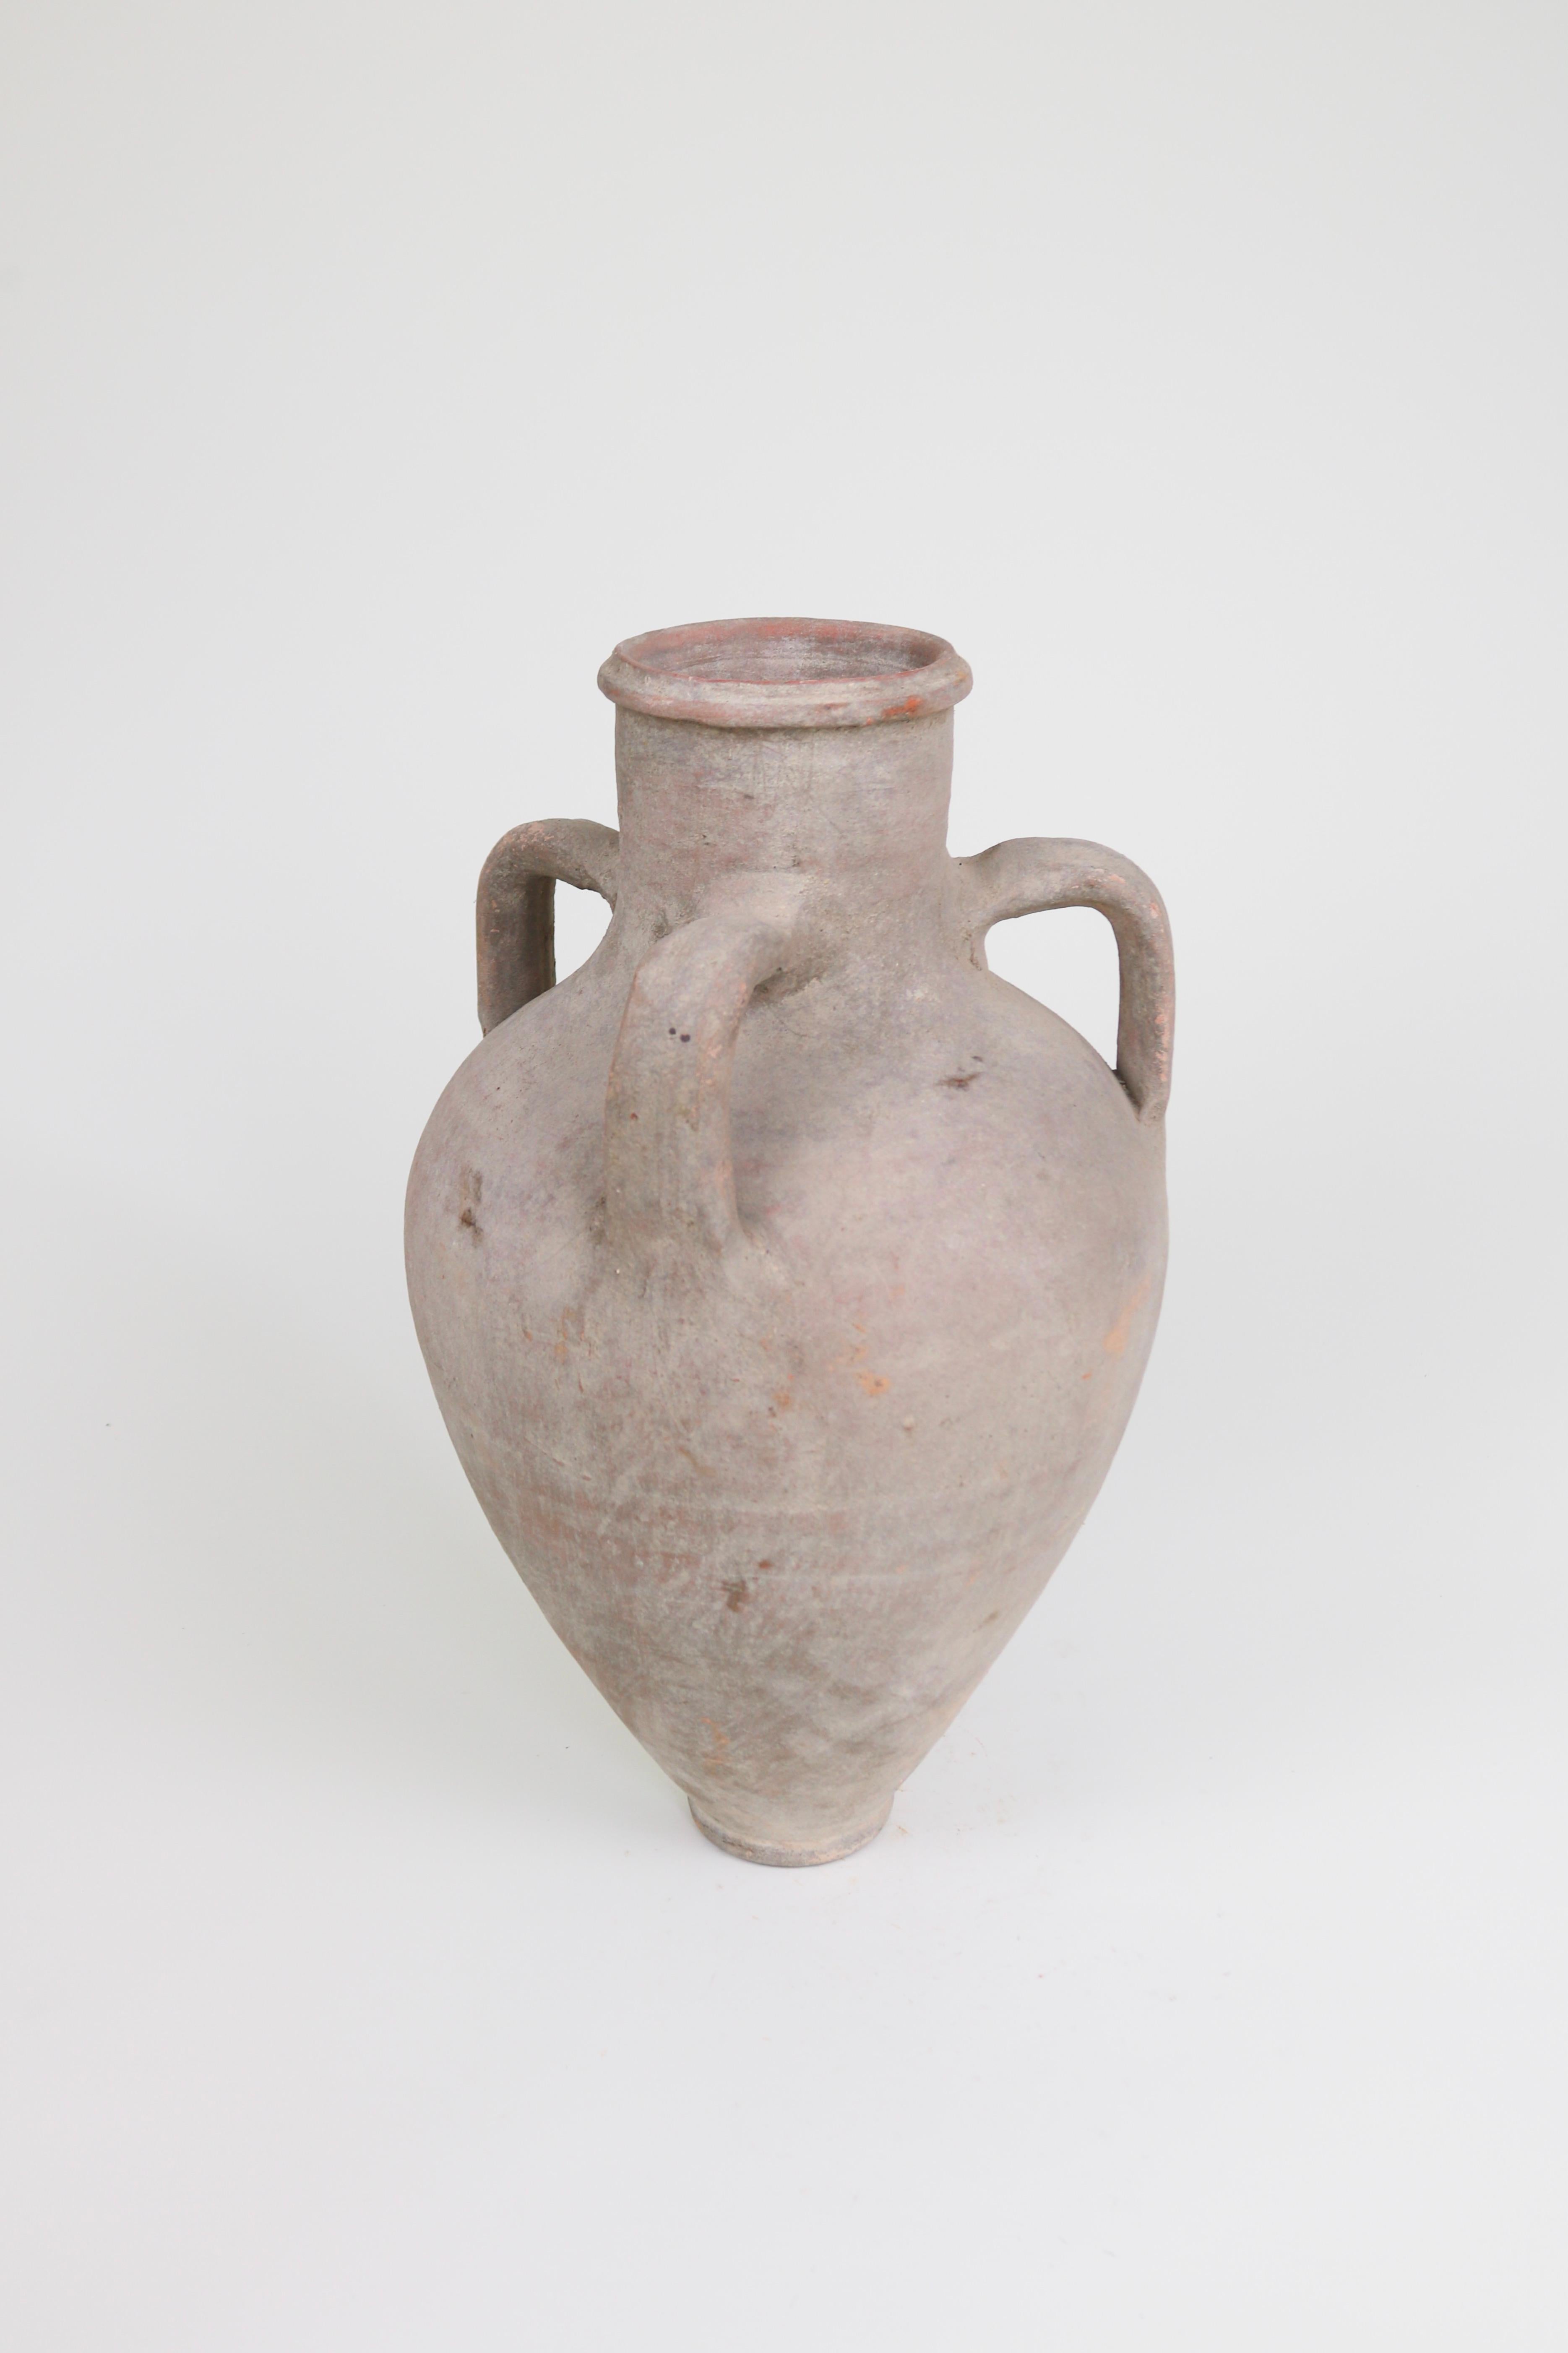 Diese dreiarmige griechische Amphora wurde Anfang des 20. Jahrhunderts zur Aufbewahrung und zum Transport von Flüssigkeiten verwendet. Mit ihrer elegant verjüngten Form und den ungewöhnlichen drei Armen ist diese staubfarbene Amphora ein schönes